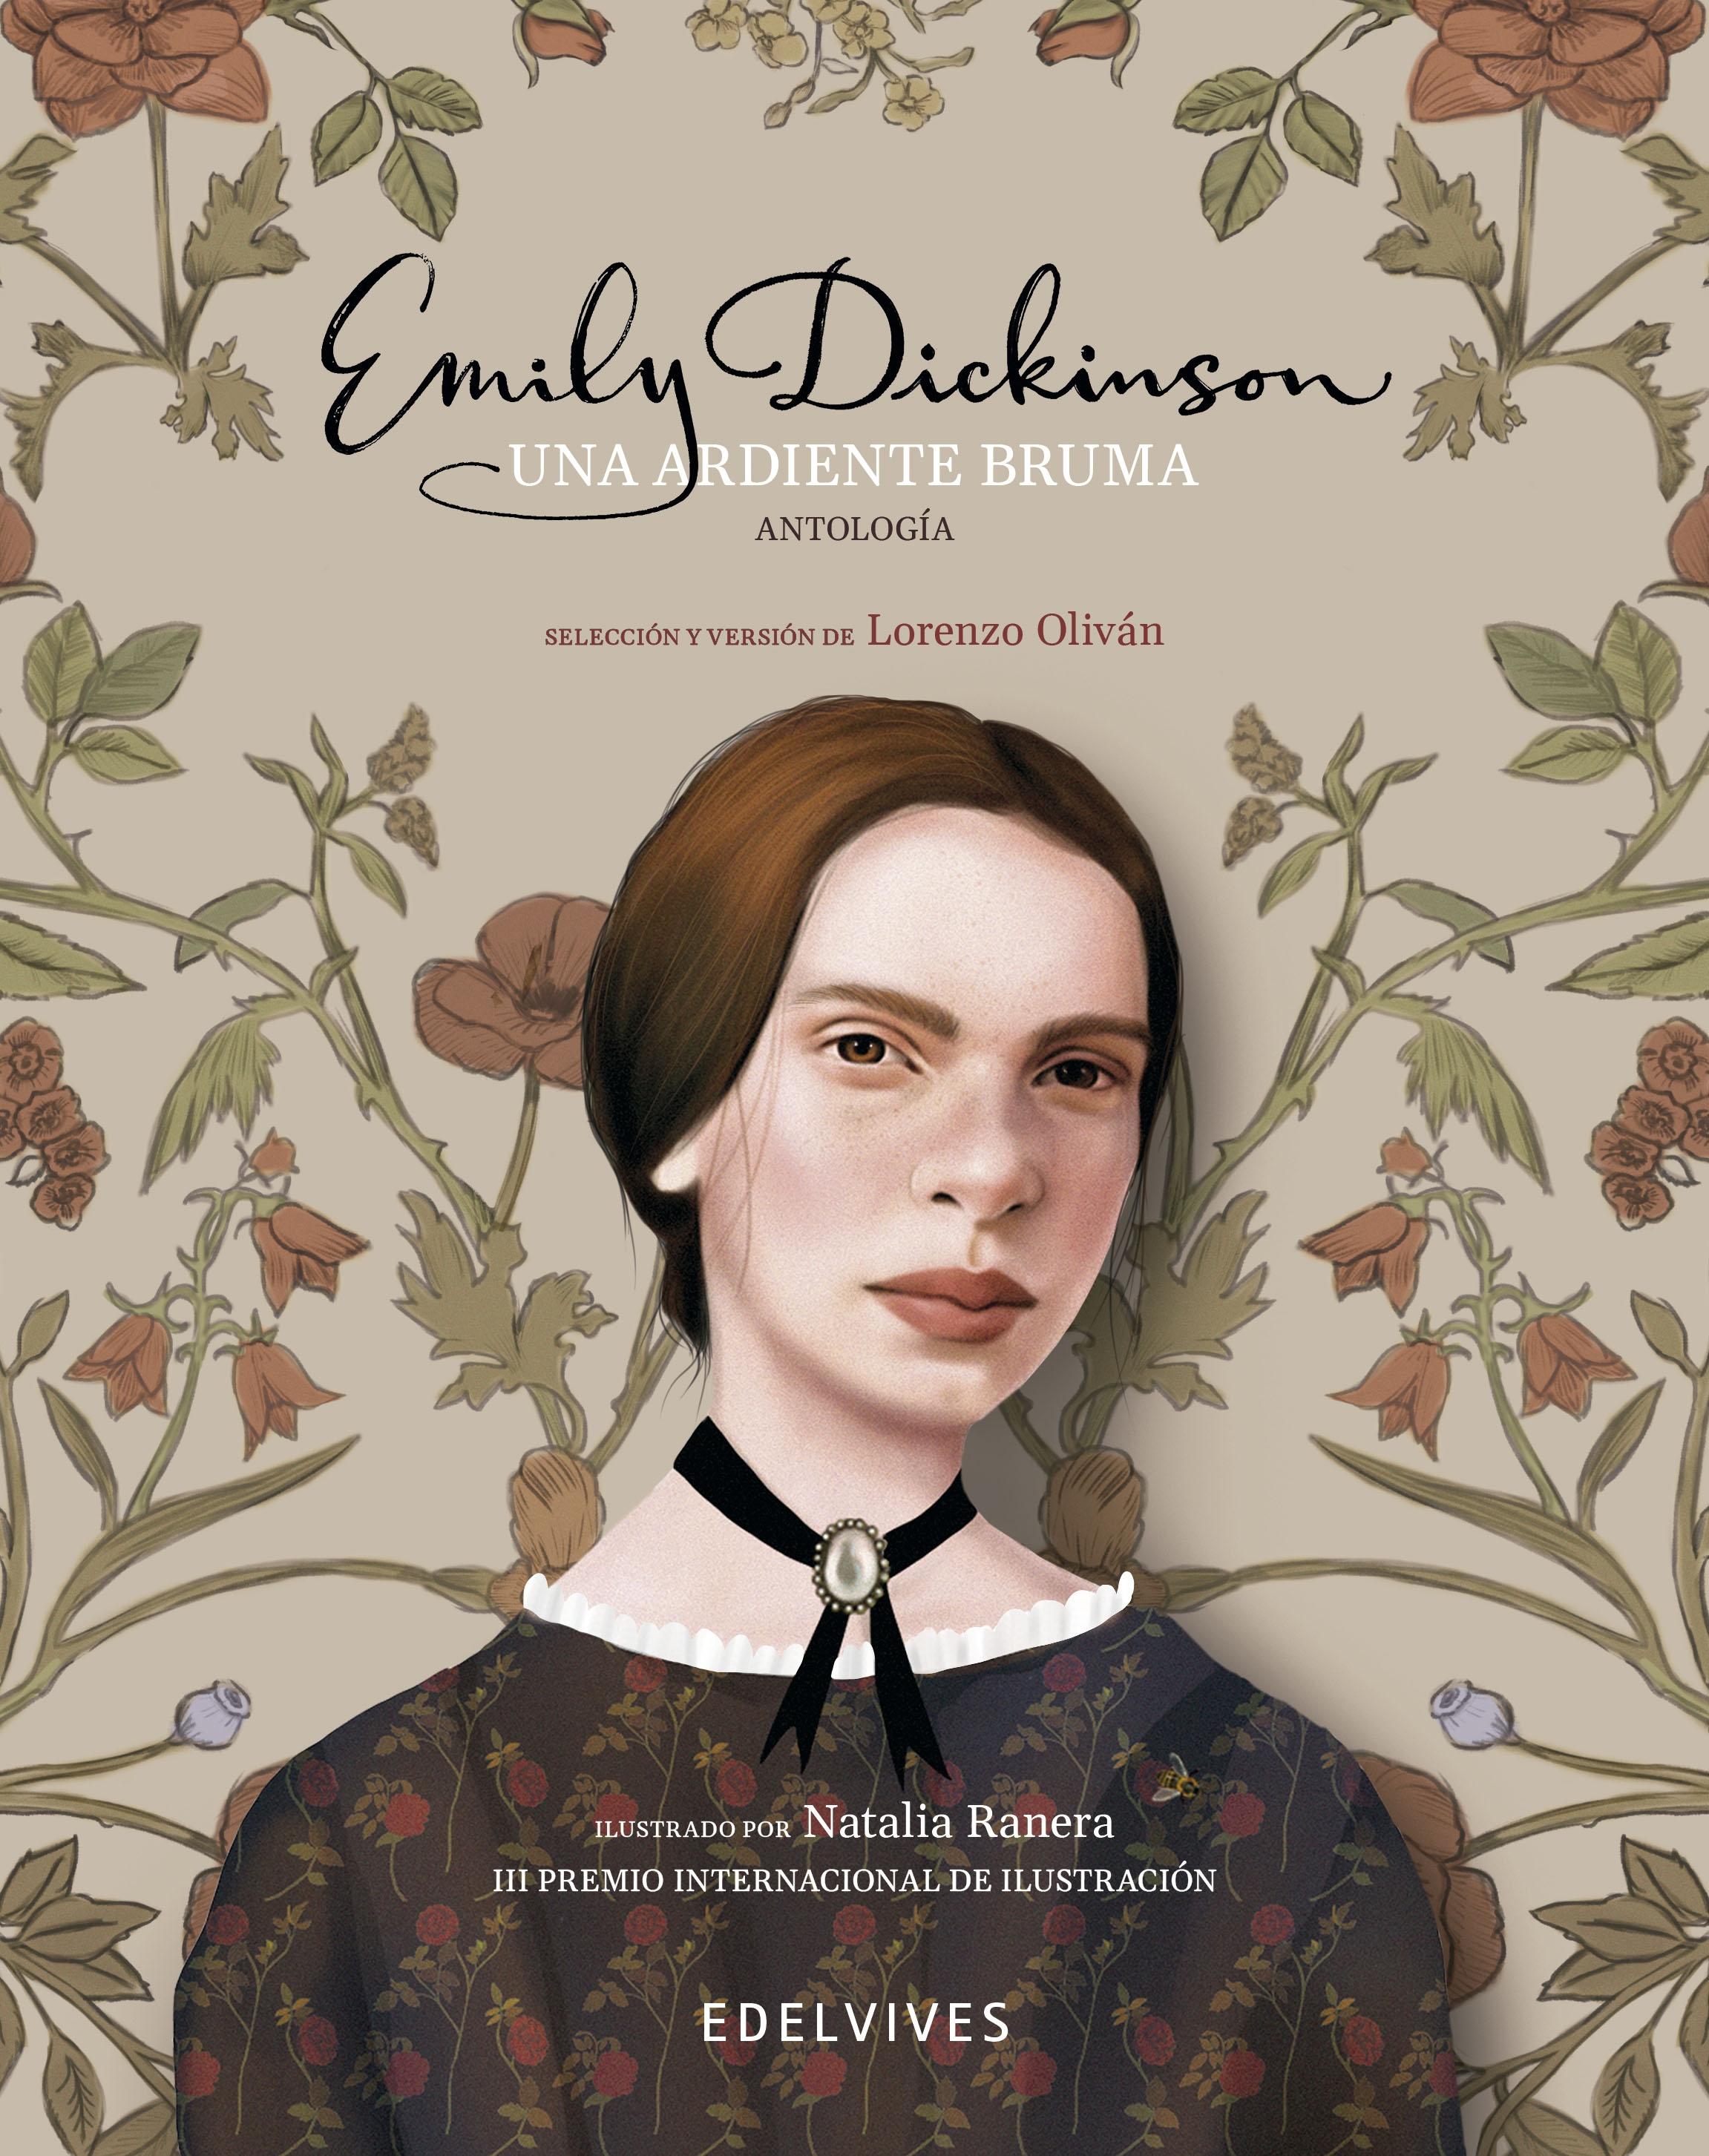 Una Ardiente Bruma "Antología de Emily Dickinson"